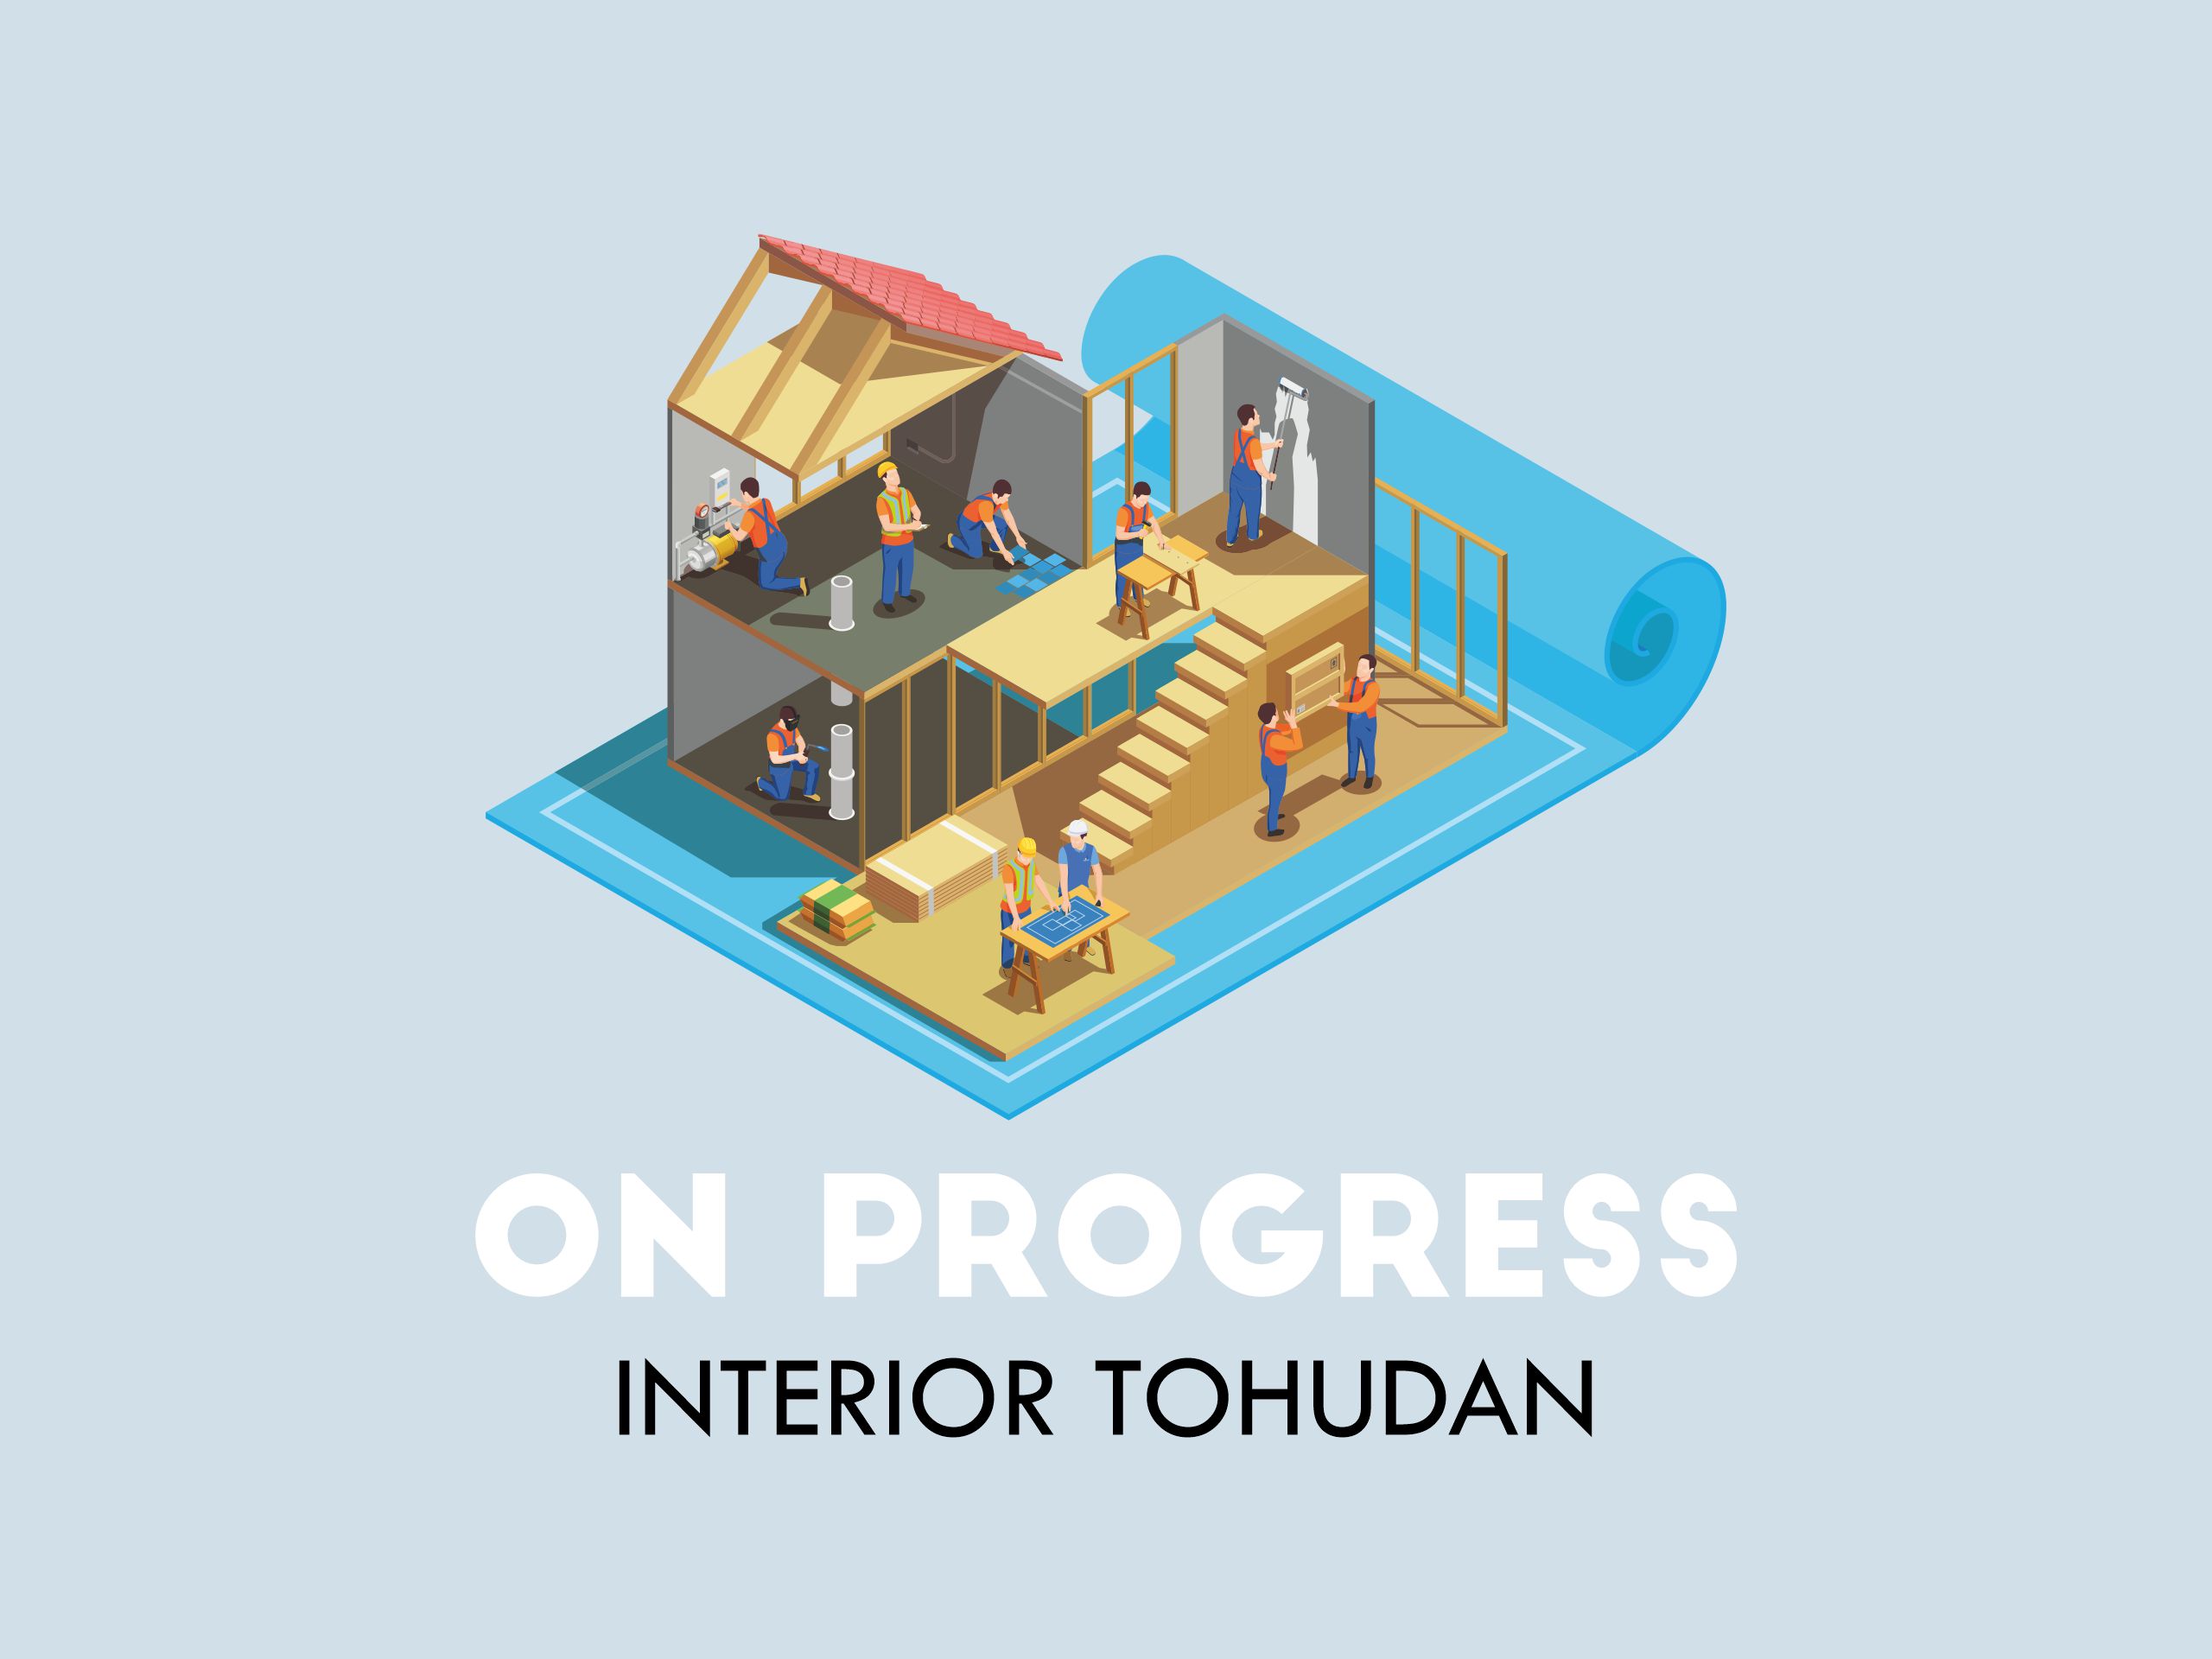 On Progress: Interior Tohudan Warehouse